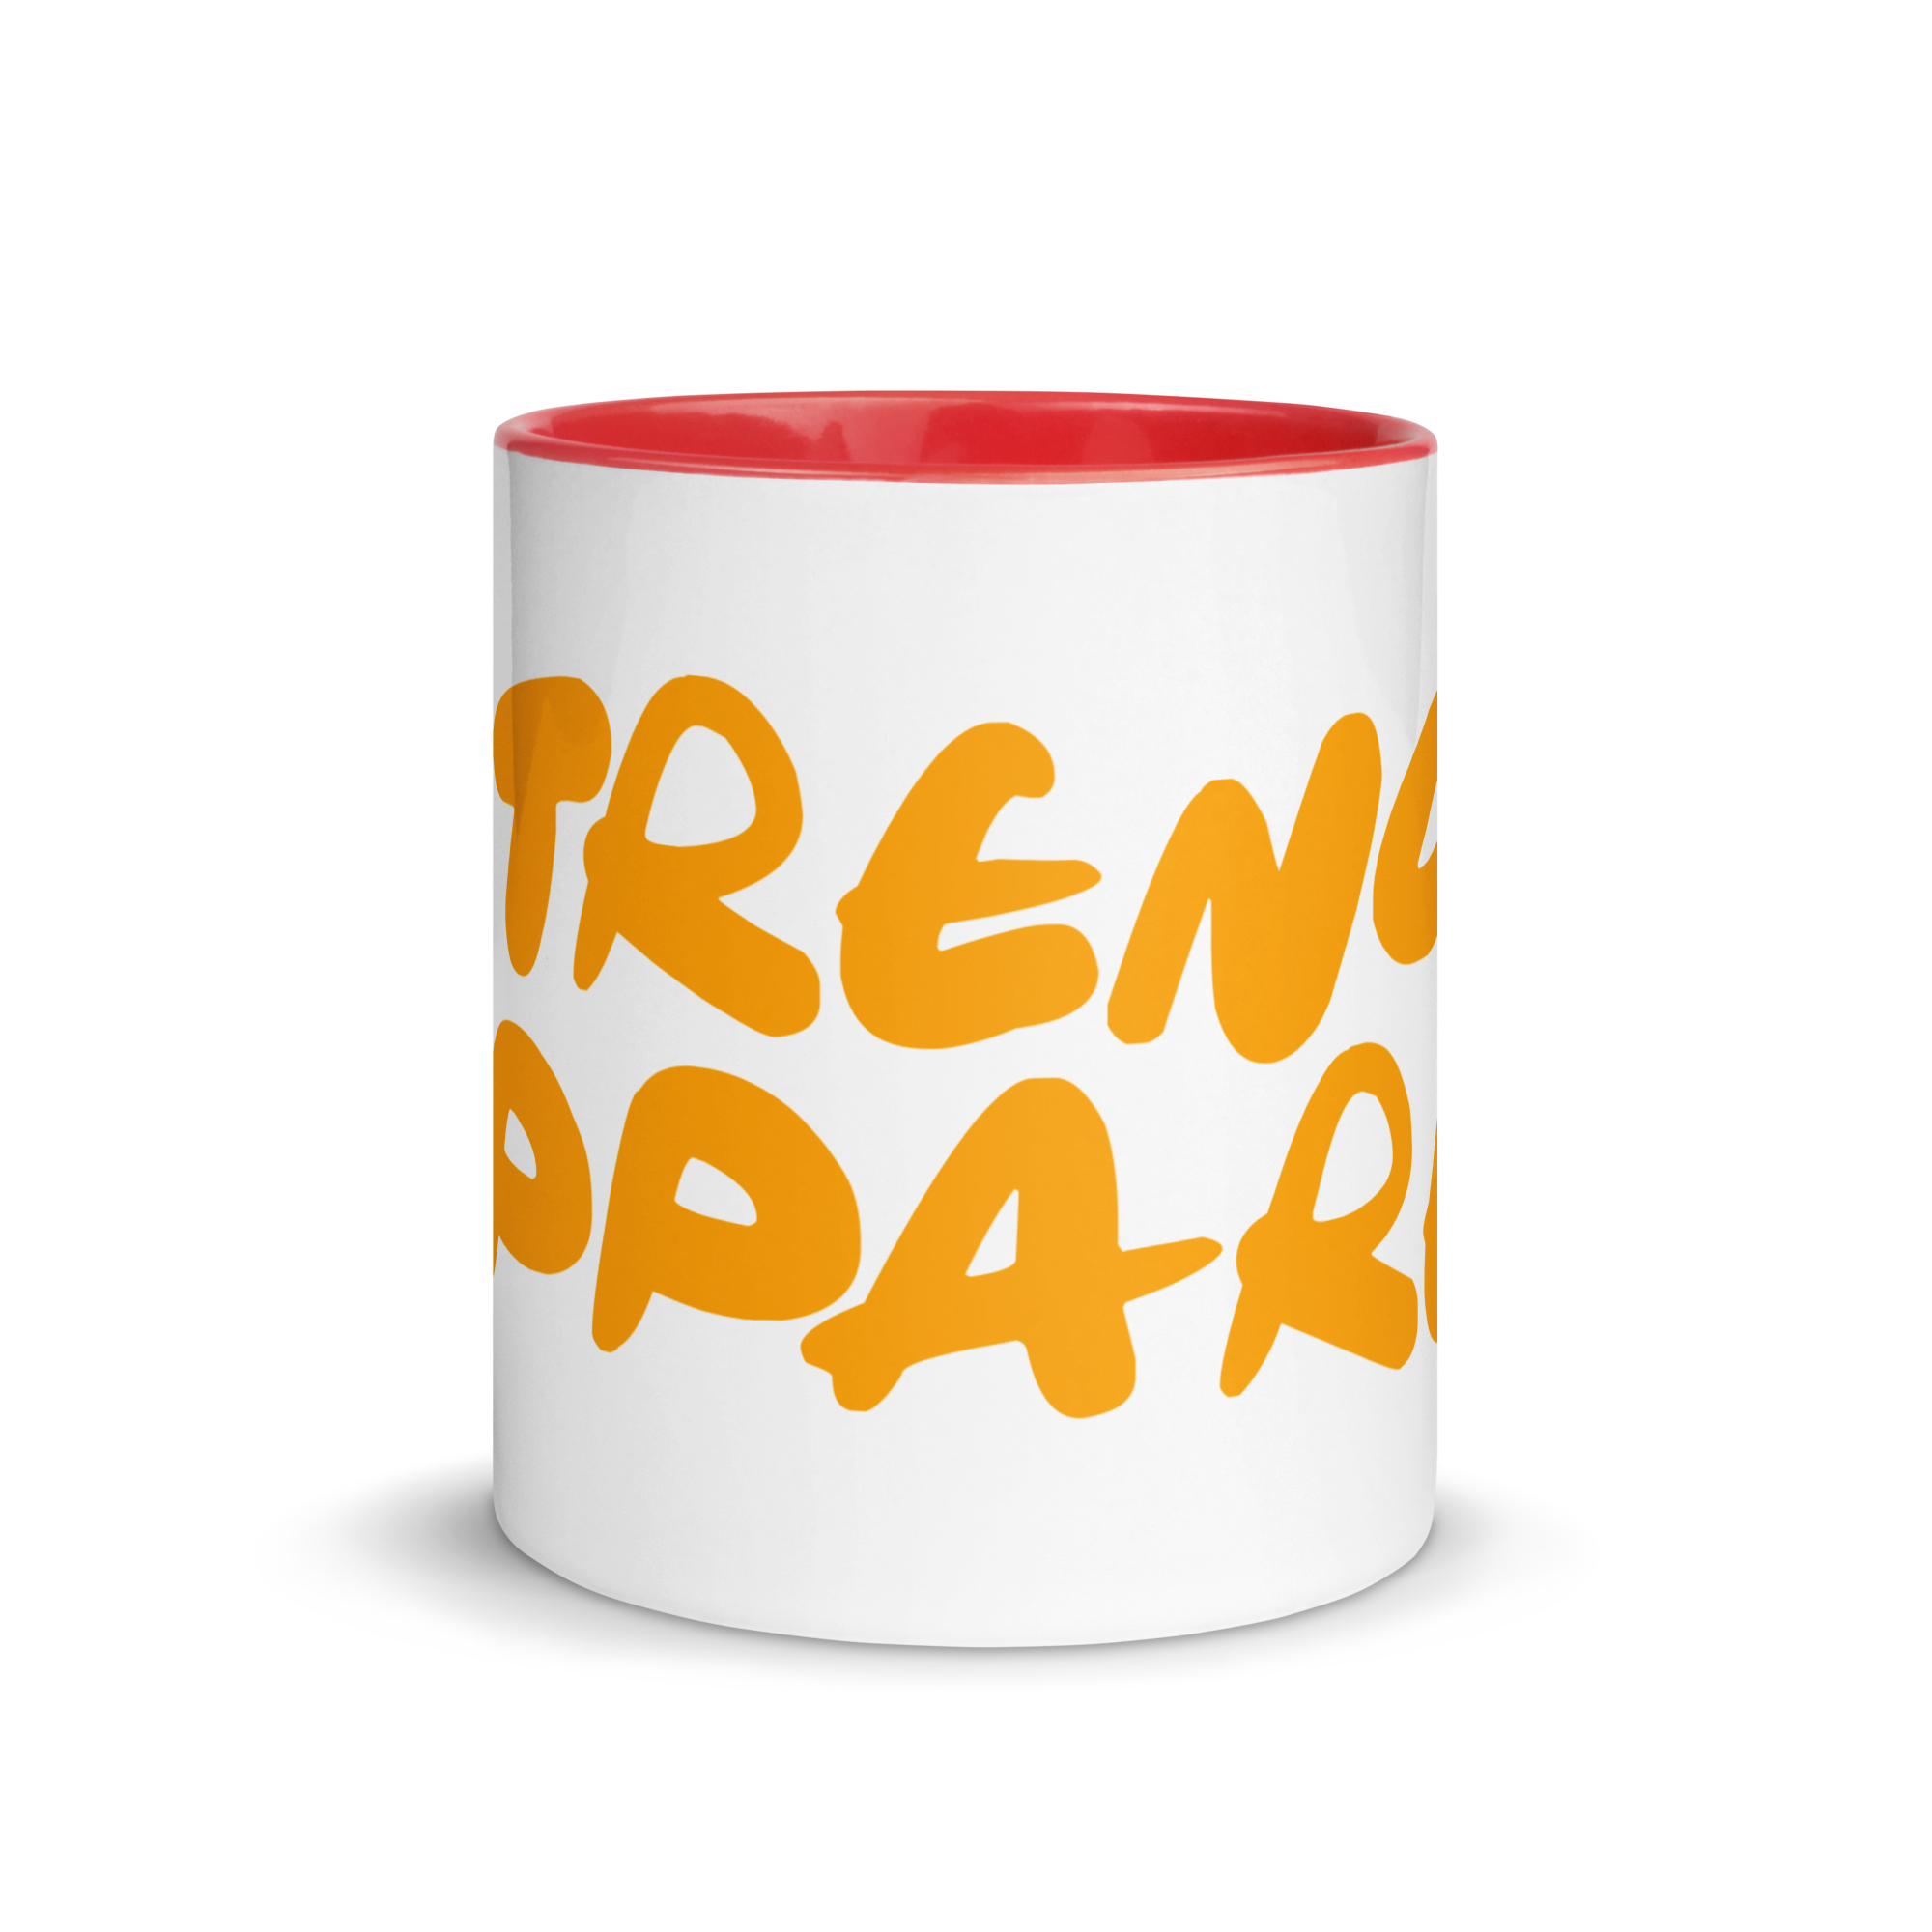 N'Trench Orange Lettering Mug with Color Inside